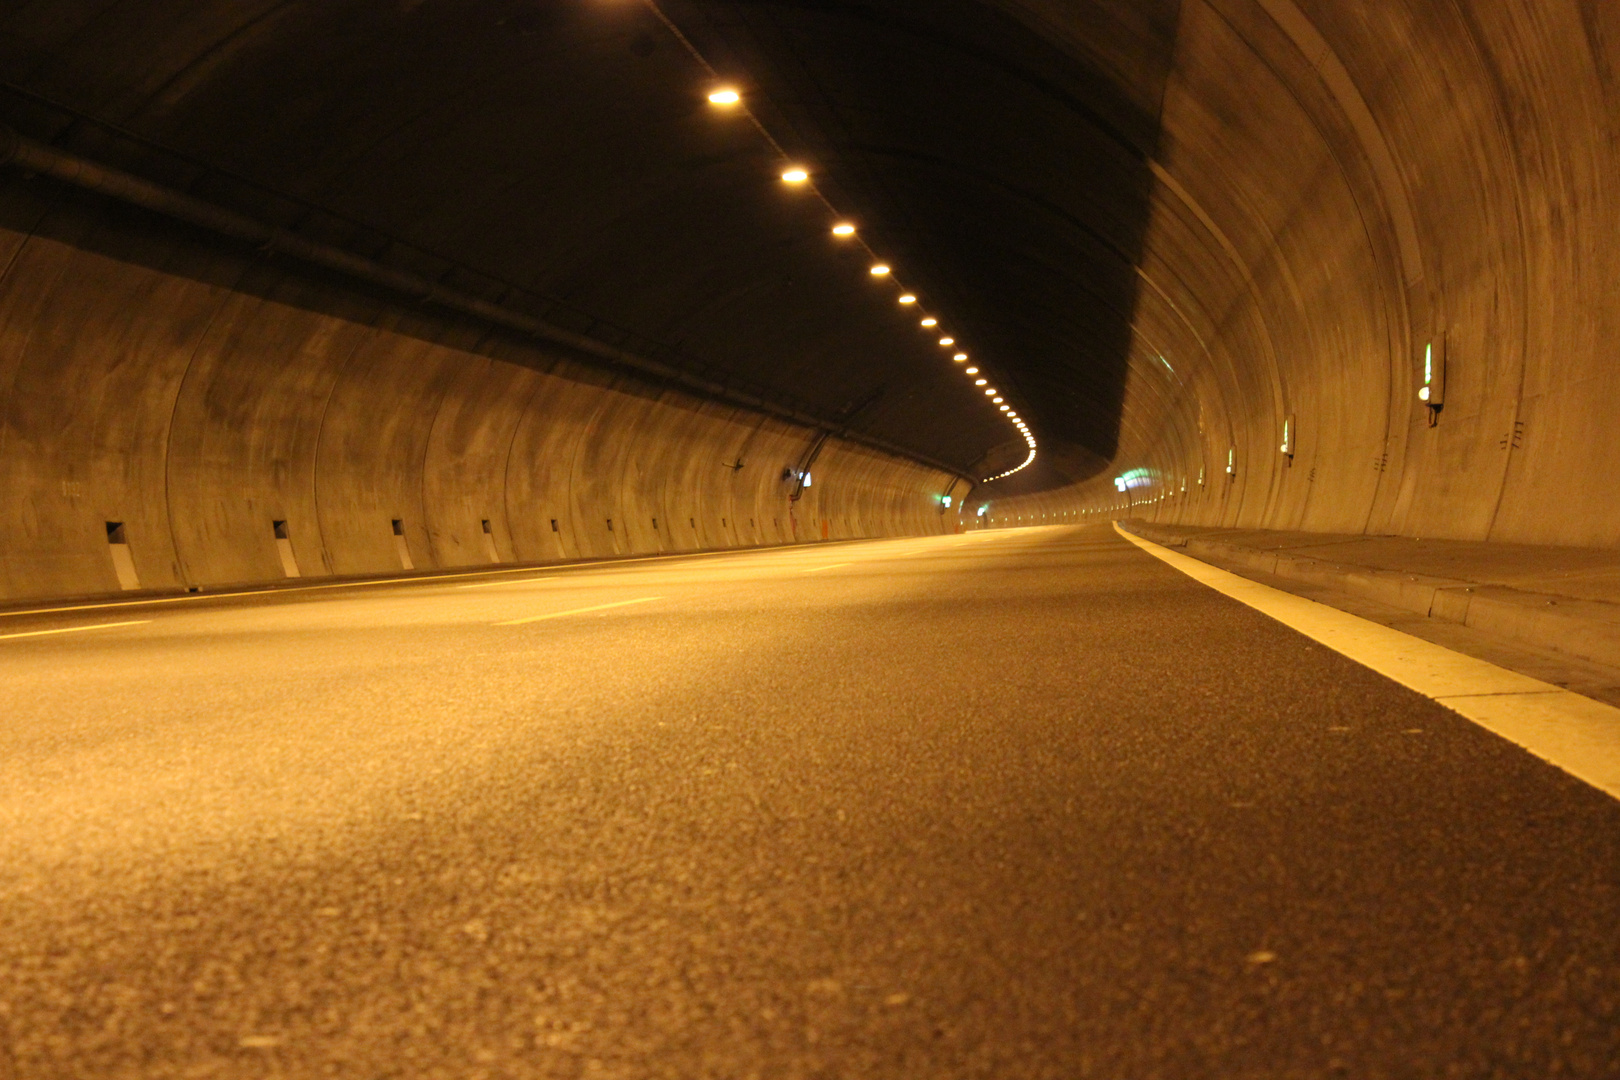 Wenn der Tunnel immer so leer wäre...